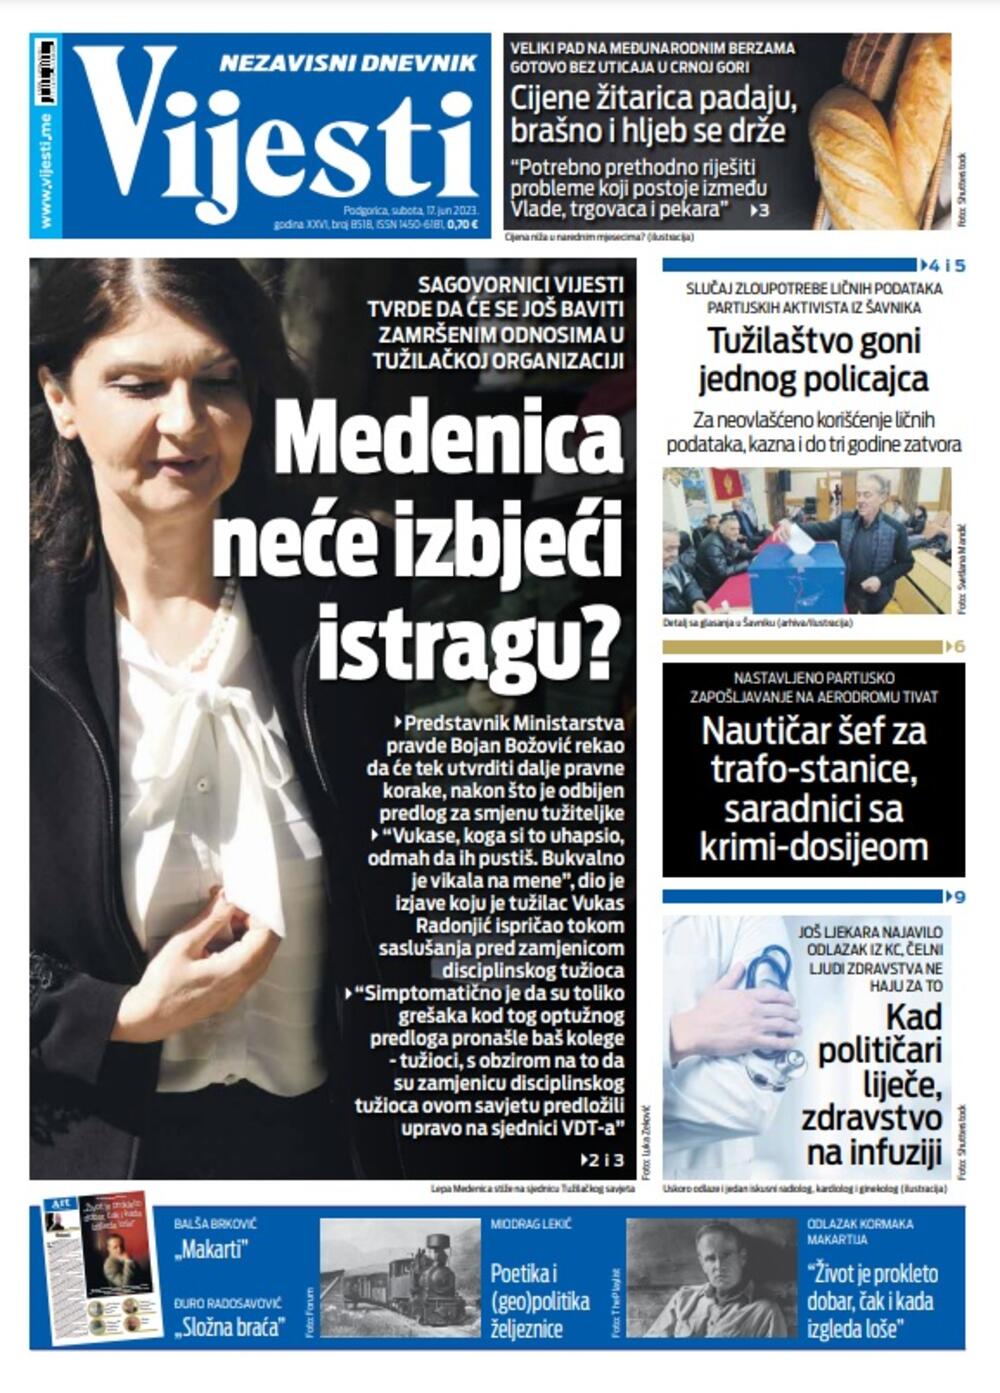 Naslovna strana "Vijesti" za 17. jun 2023. godine, Foto: Vijesti